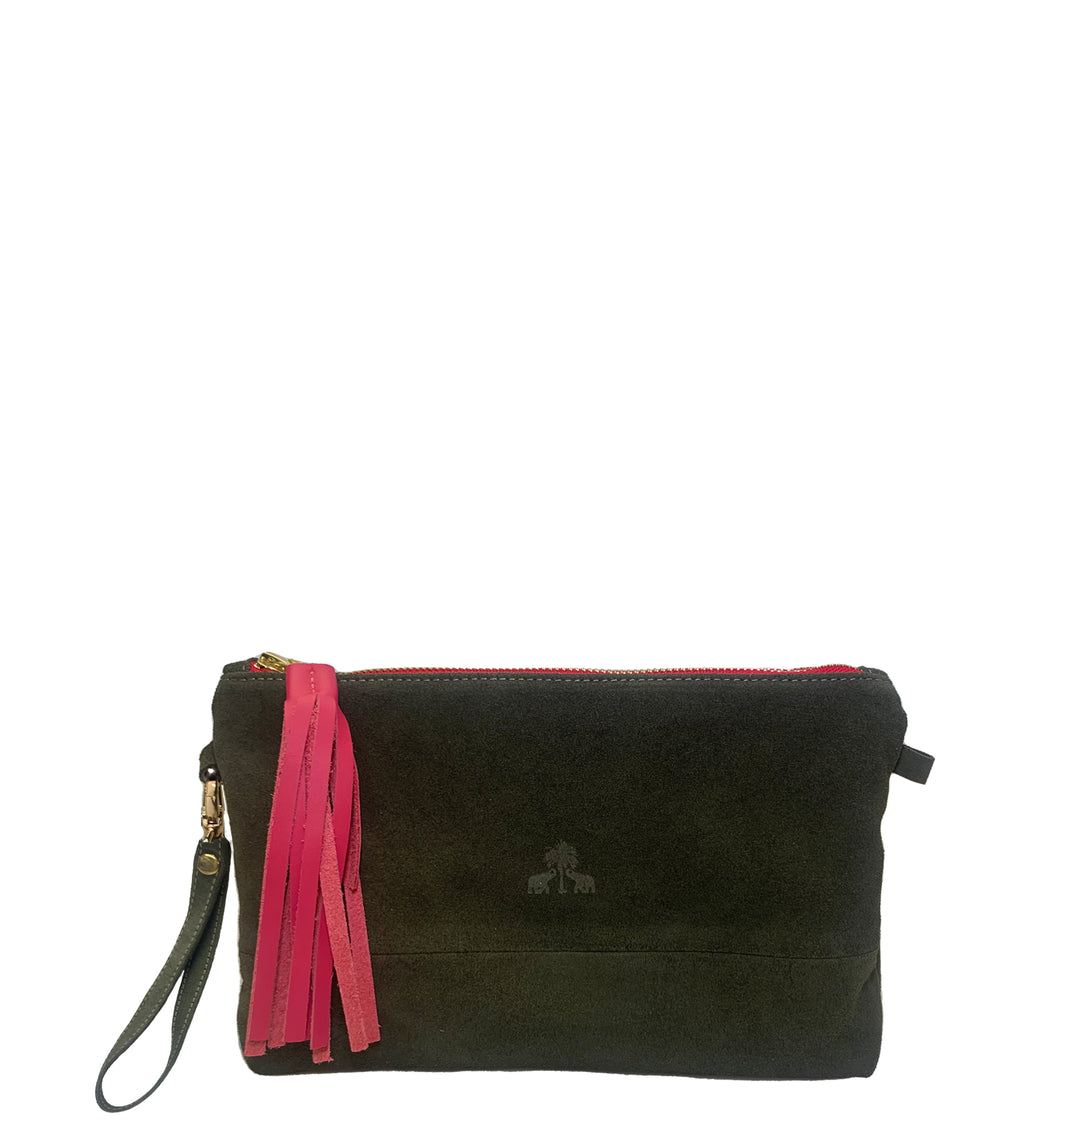 Clutch Bag CLARA -olive & pink-